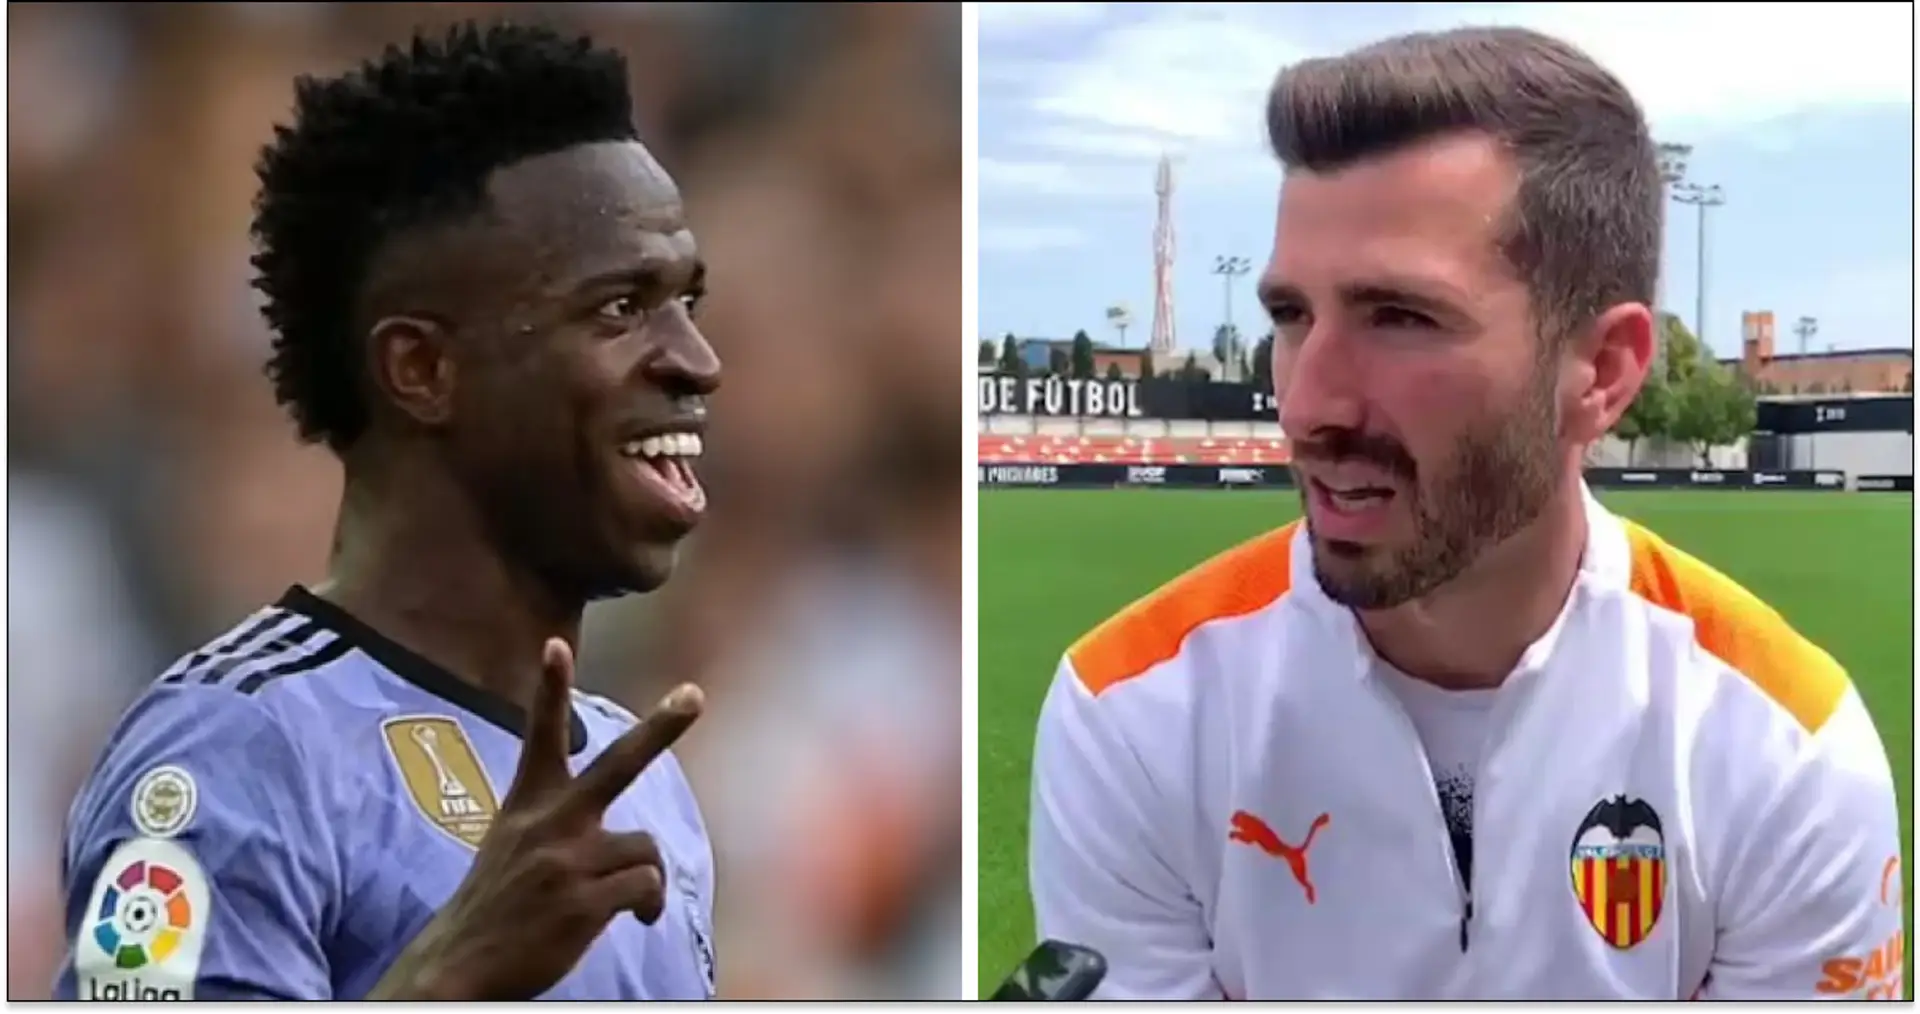 "Wir haben auch farbige Spieler": Valencia-Kapitän will lebenslange Sperre für Fans, die Vinicius rassistisch beschimpft haben